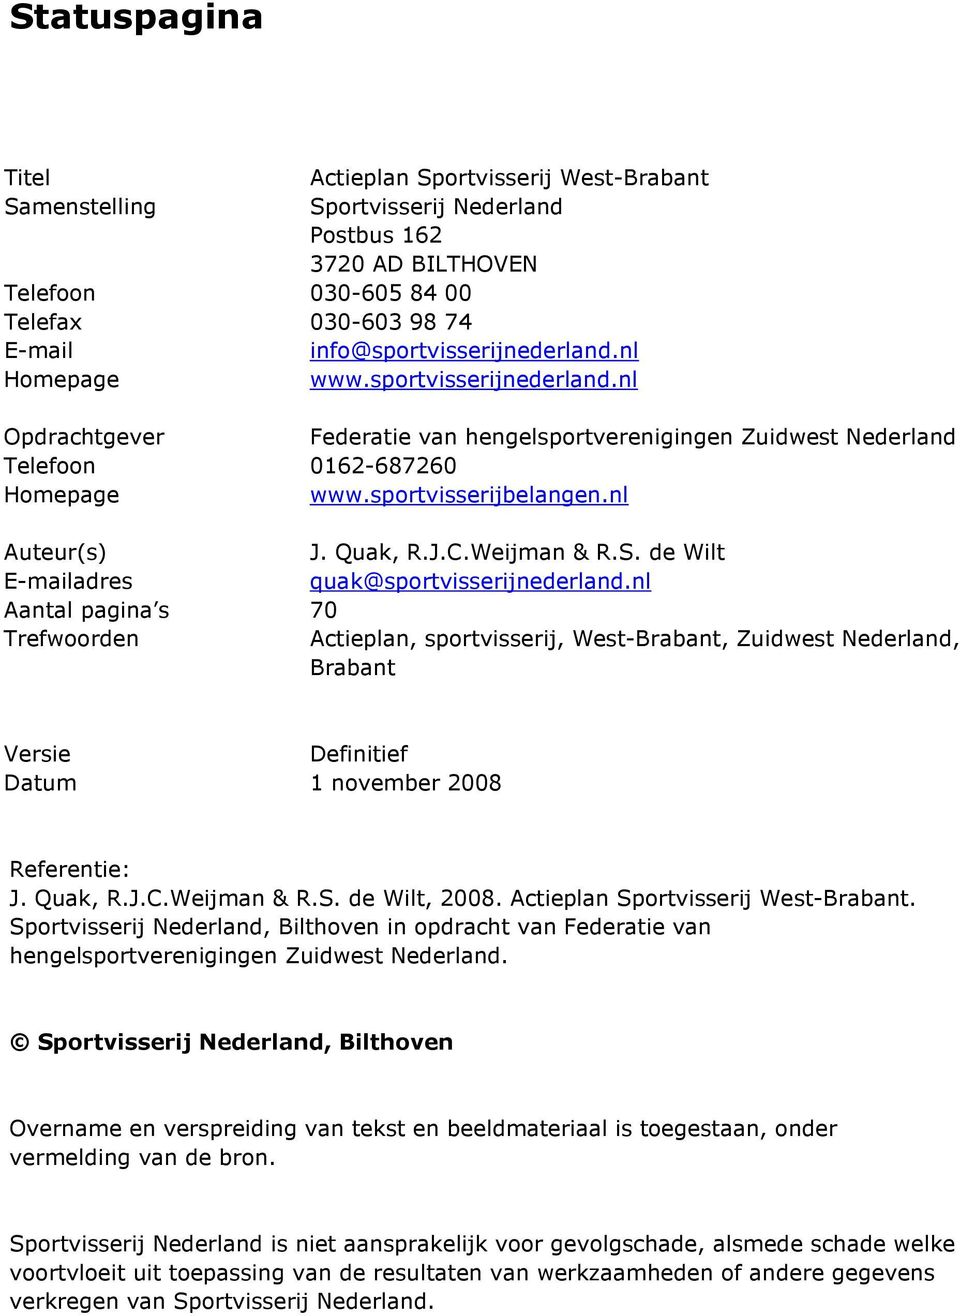 de Wilt E-mailadres quak@sportvisserijnederland.